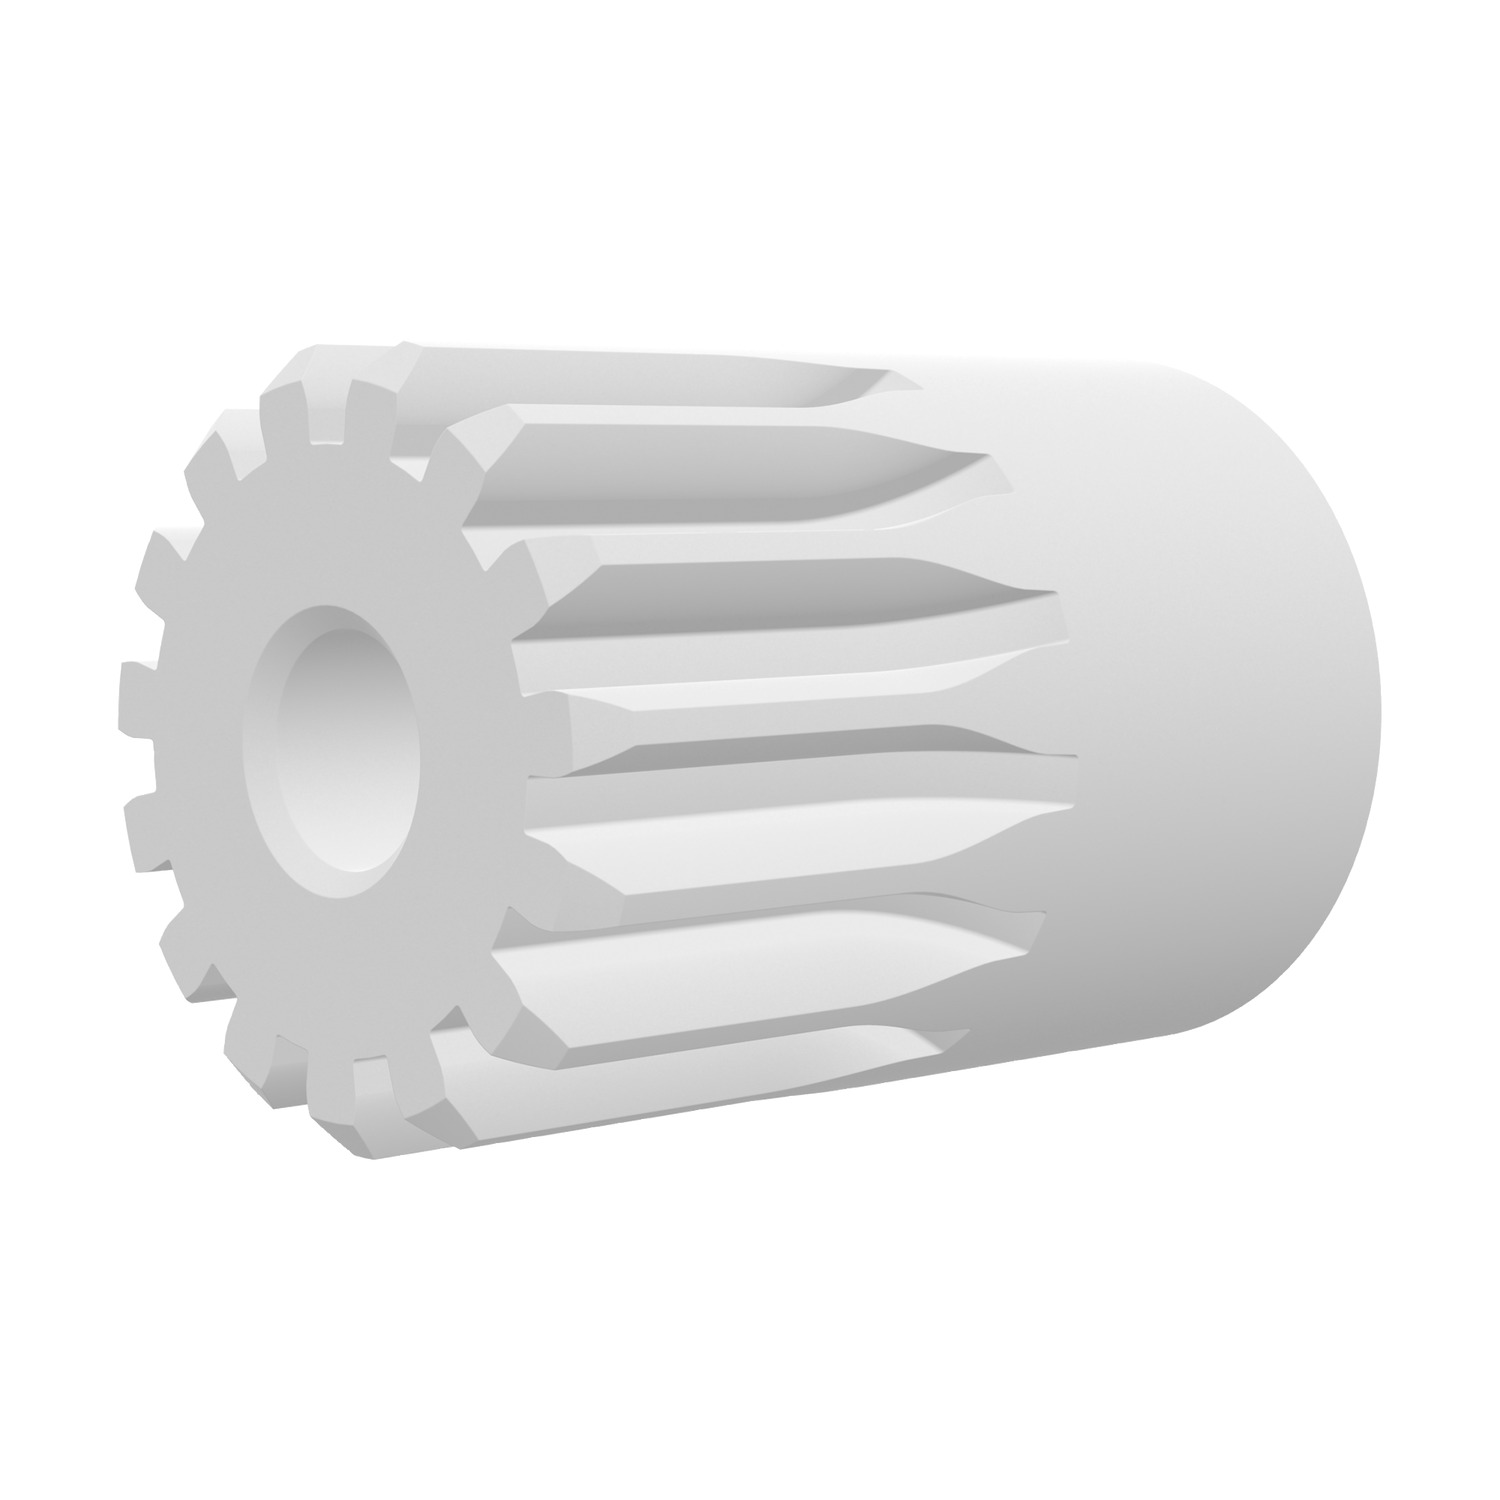 Product R5148, Spur Gears - Module 0.8 white polyacetal - 14-15 teeth / 